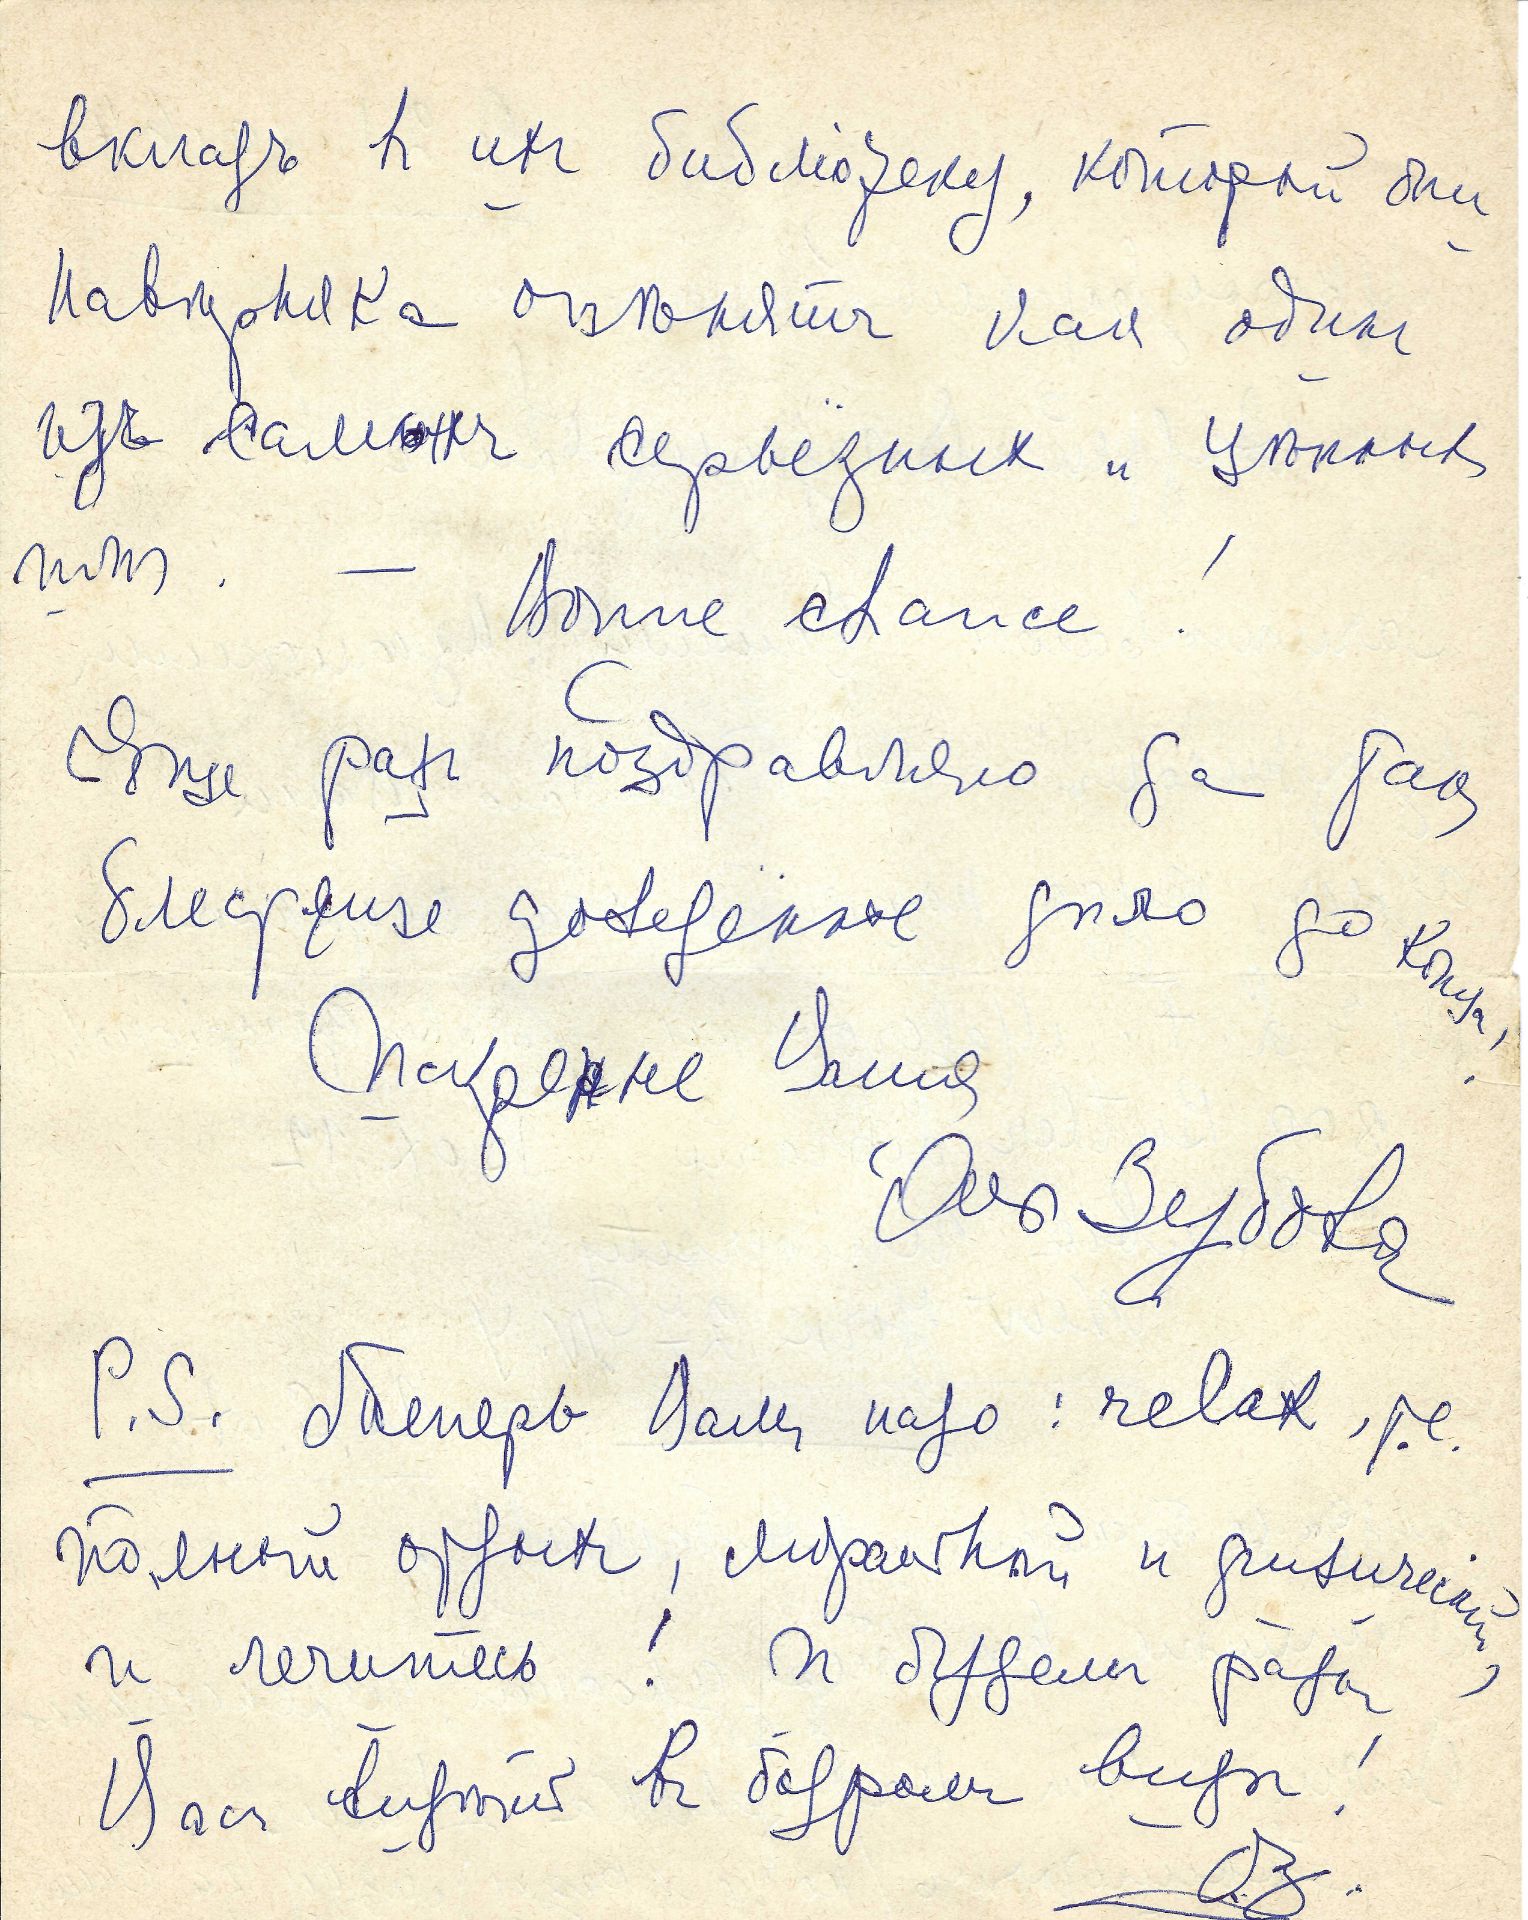 ARCHIVES d’Andreï BALASHOV (1889-1969) • Correspondances avec A.Efremov (1878-1964) en France, V. - Image 34 of 39